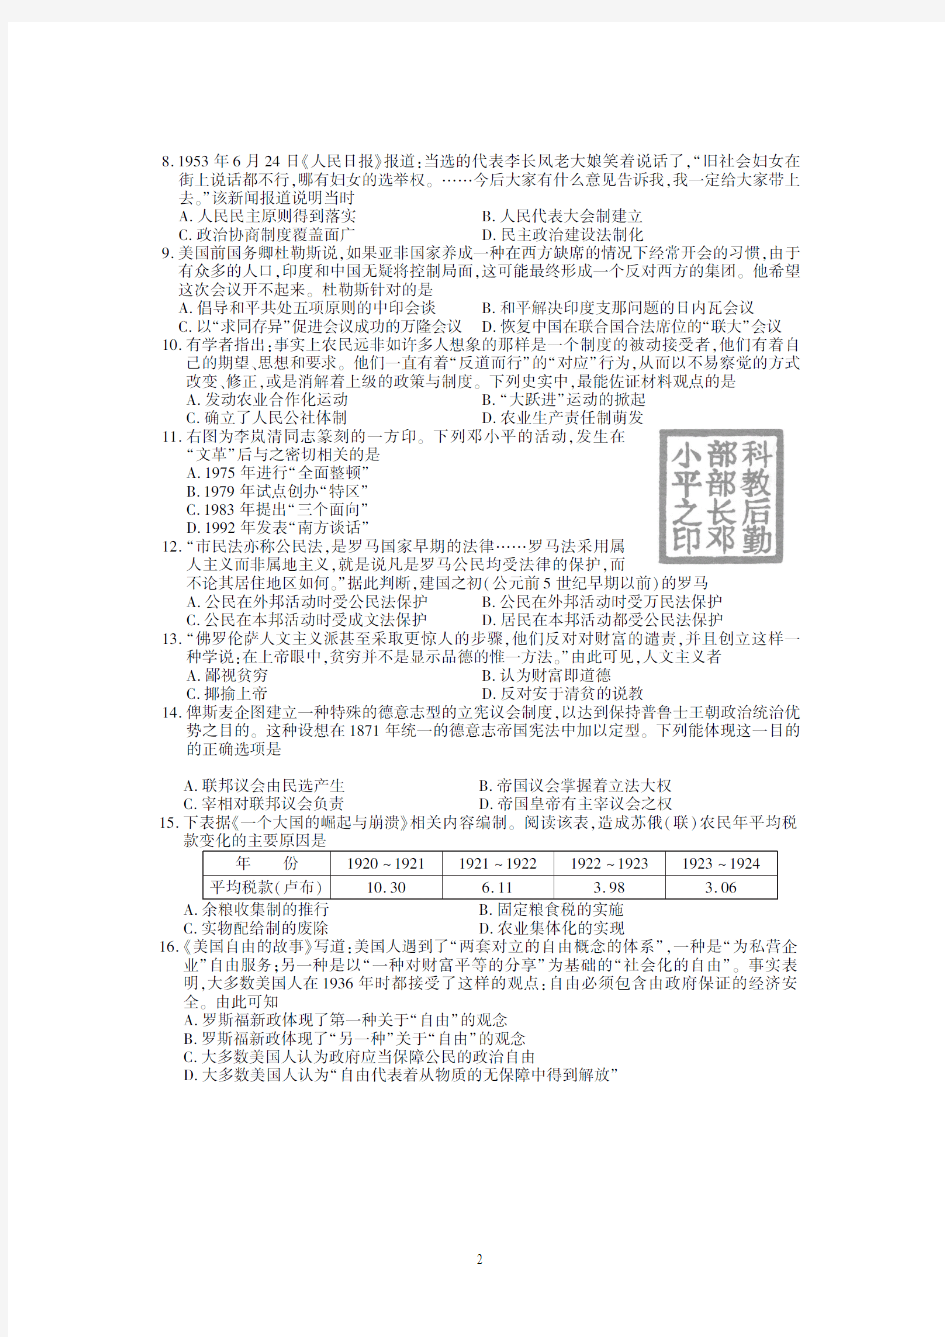 2014年江苏省高考历史试卷试题真题及答案(经典版)